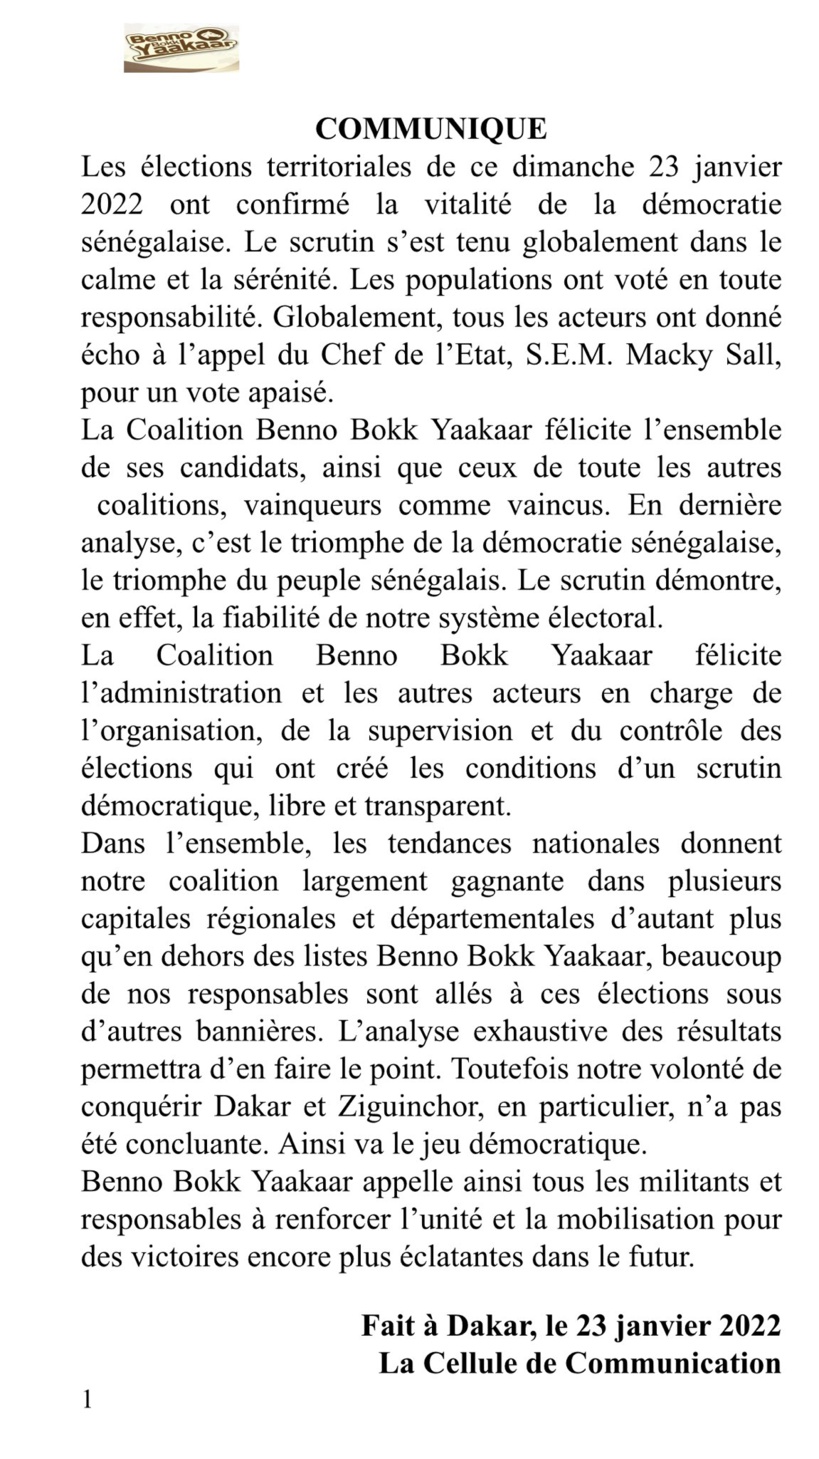 Benno Bokk Yakaar reconnaît ses défaites à Dakar et Ziguinchor (Communiqué)